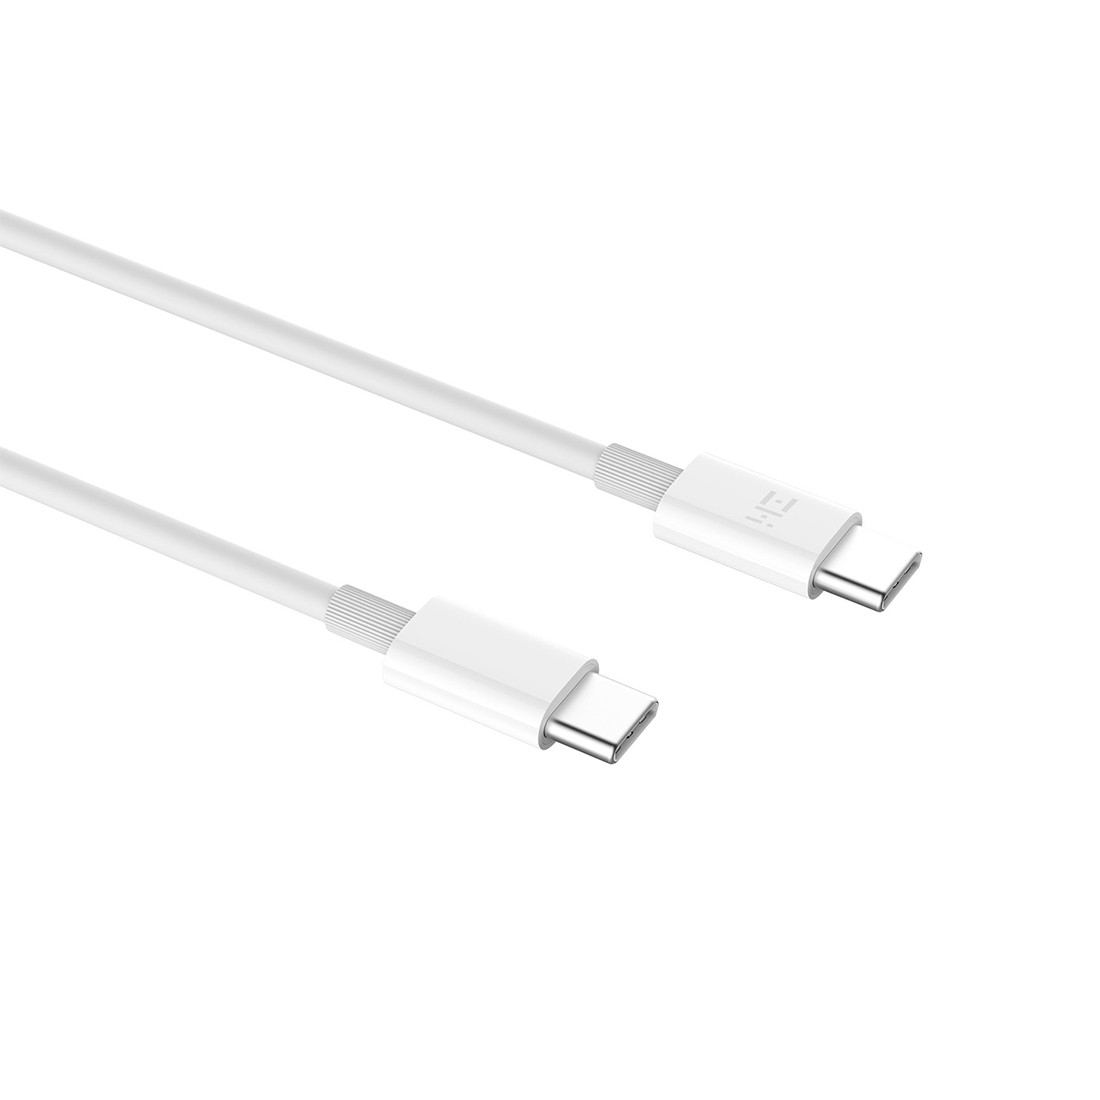 Интерфейсный кабель Xiaomi USB Type-C to Type-C 150 см, фото 1